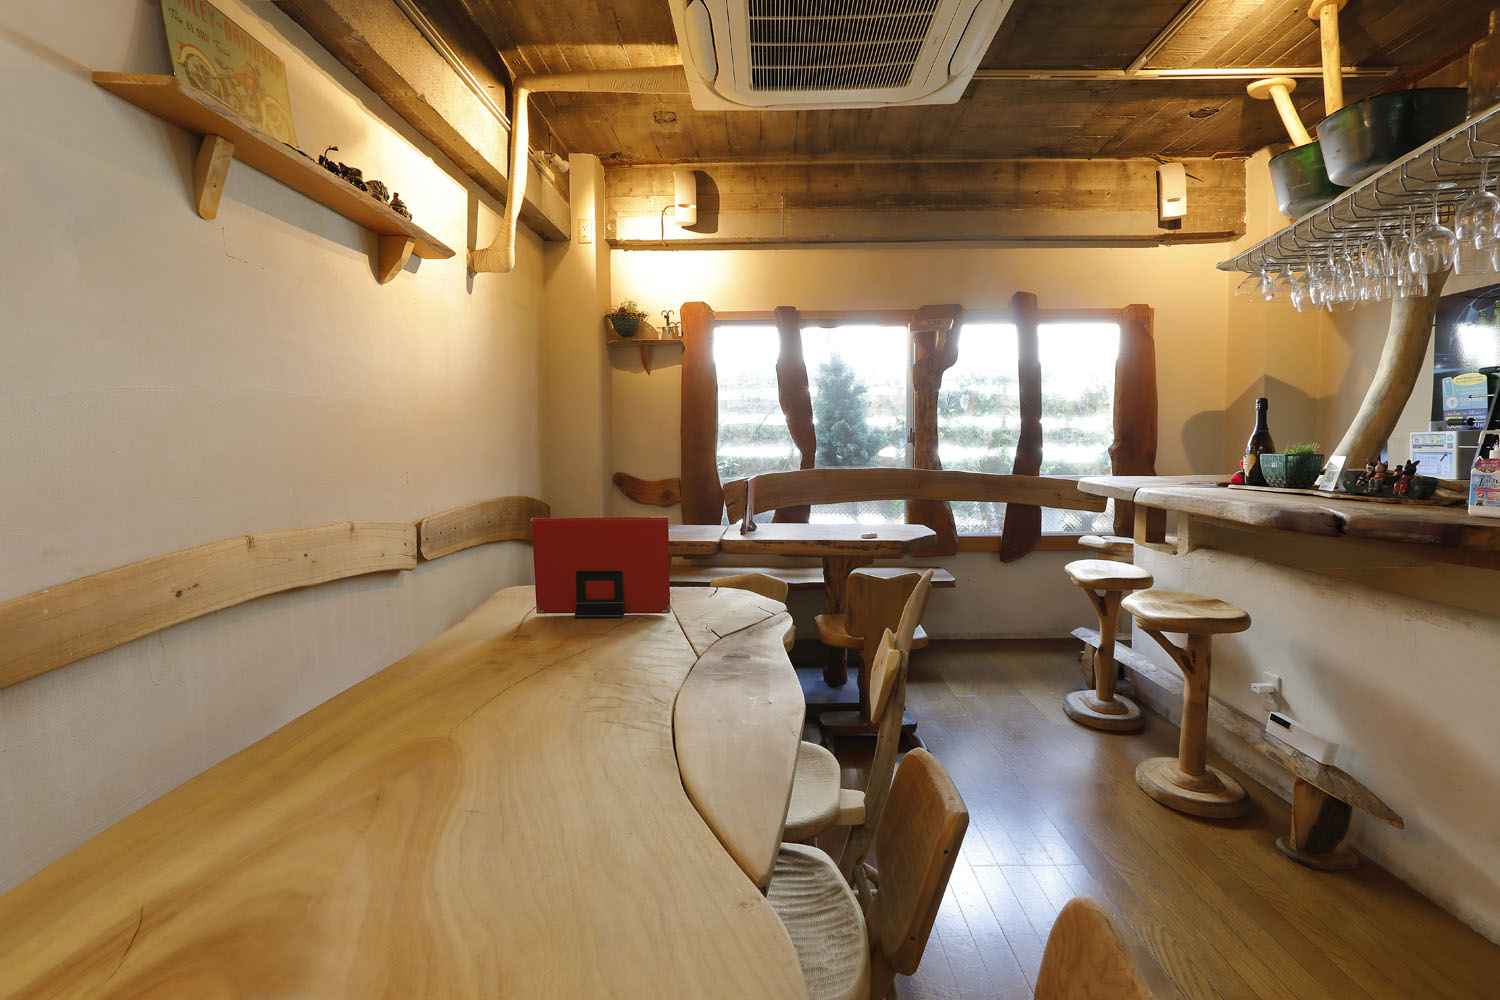 伊豆稲取の流木作家による内装、家具でしつらえる。